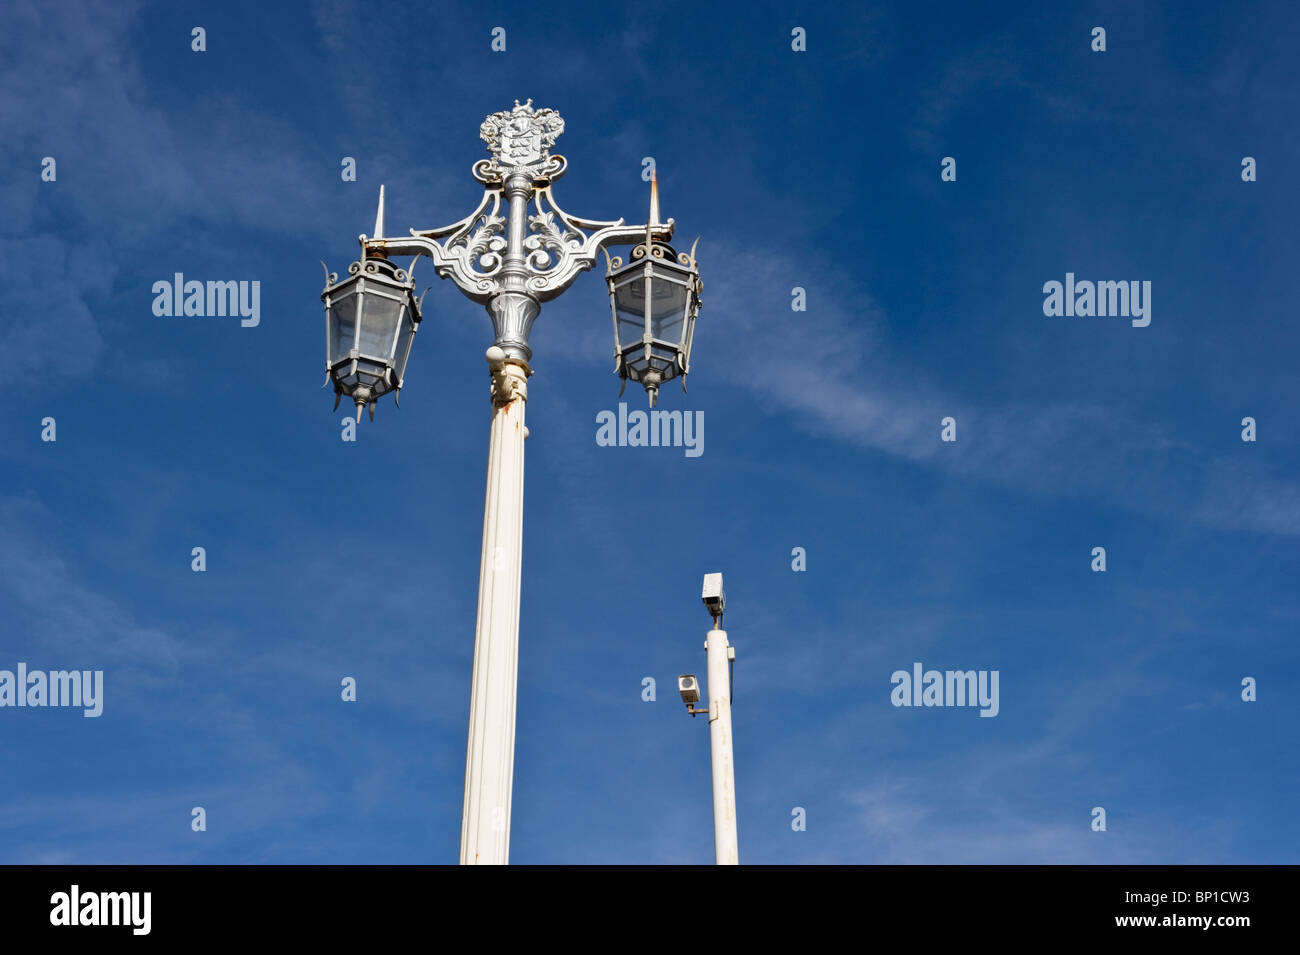 Ornamentadas lámparas de calle; las luces de la calle contra un cielo azul de verano a lo largo de Brighton, frente al mar. Foto de stock